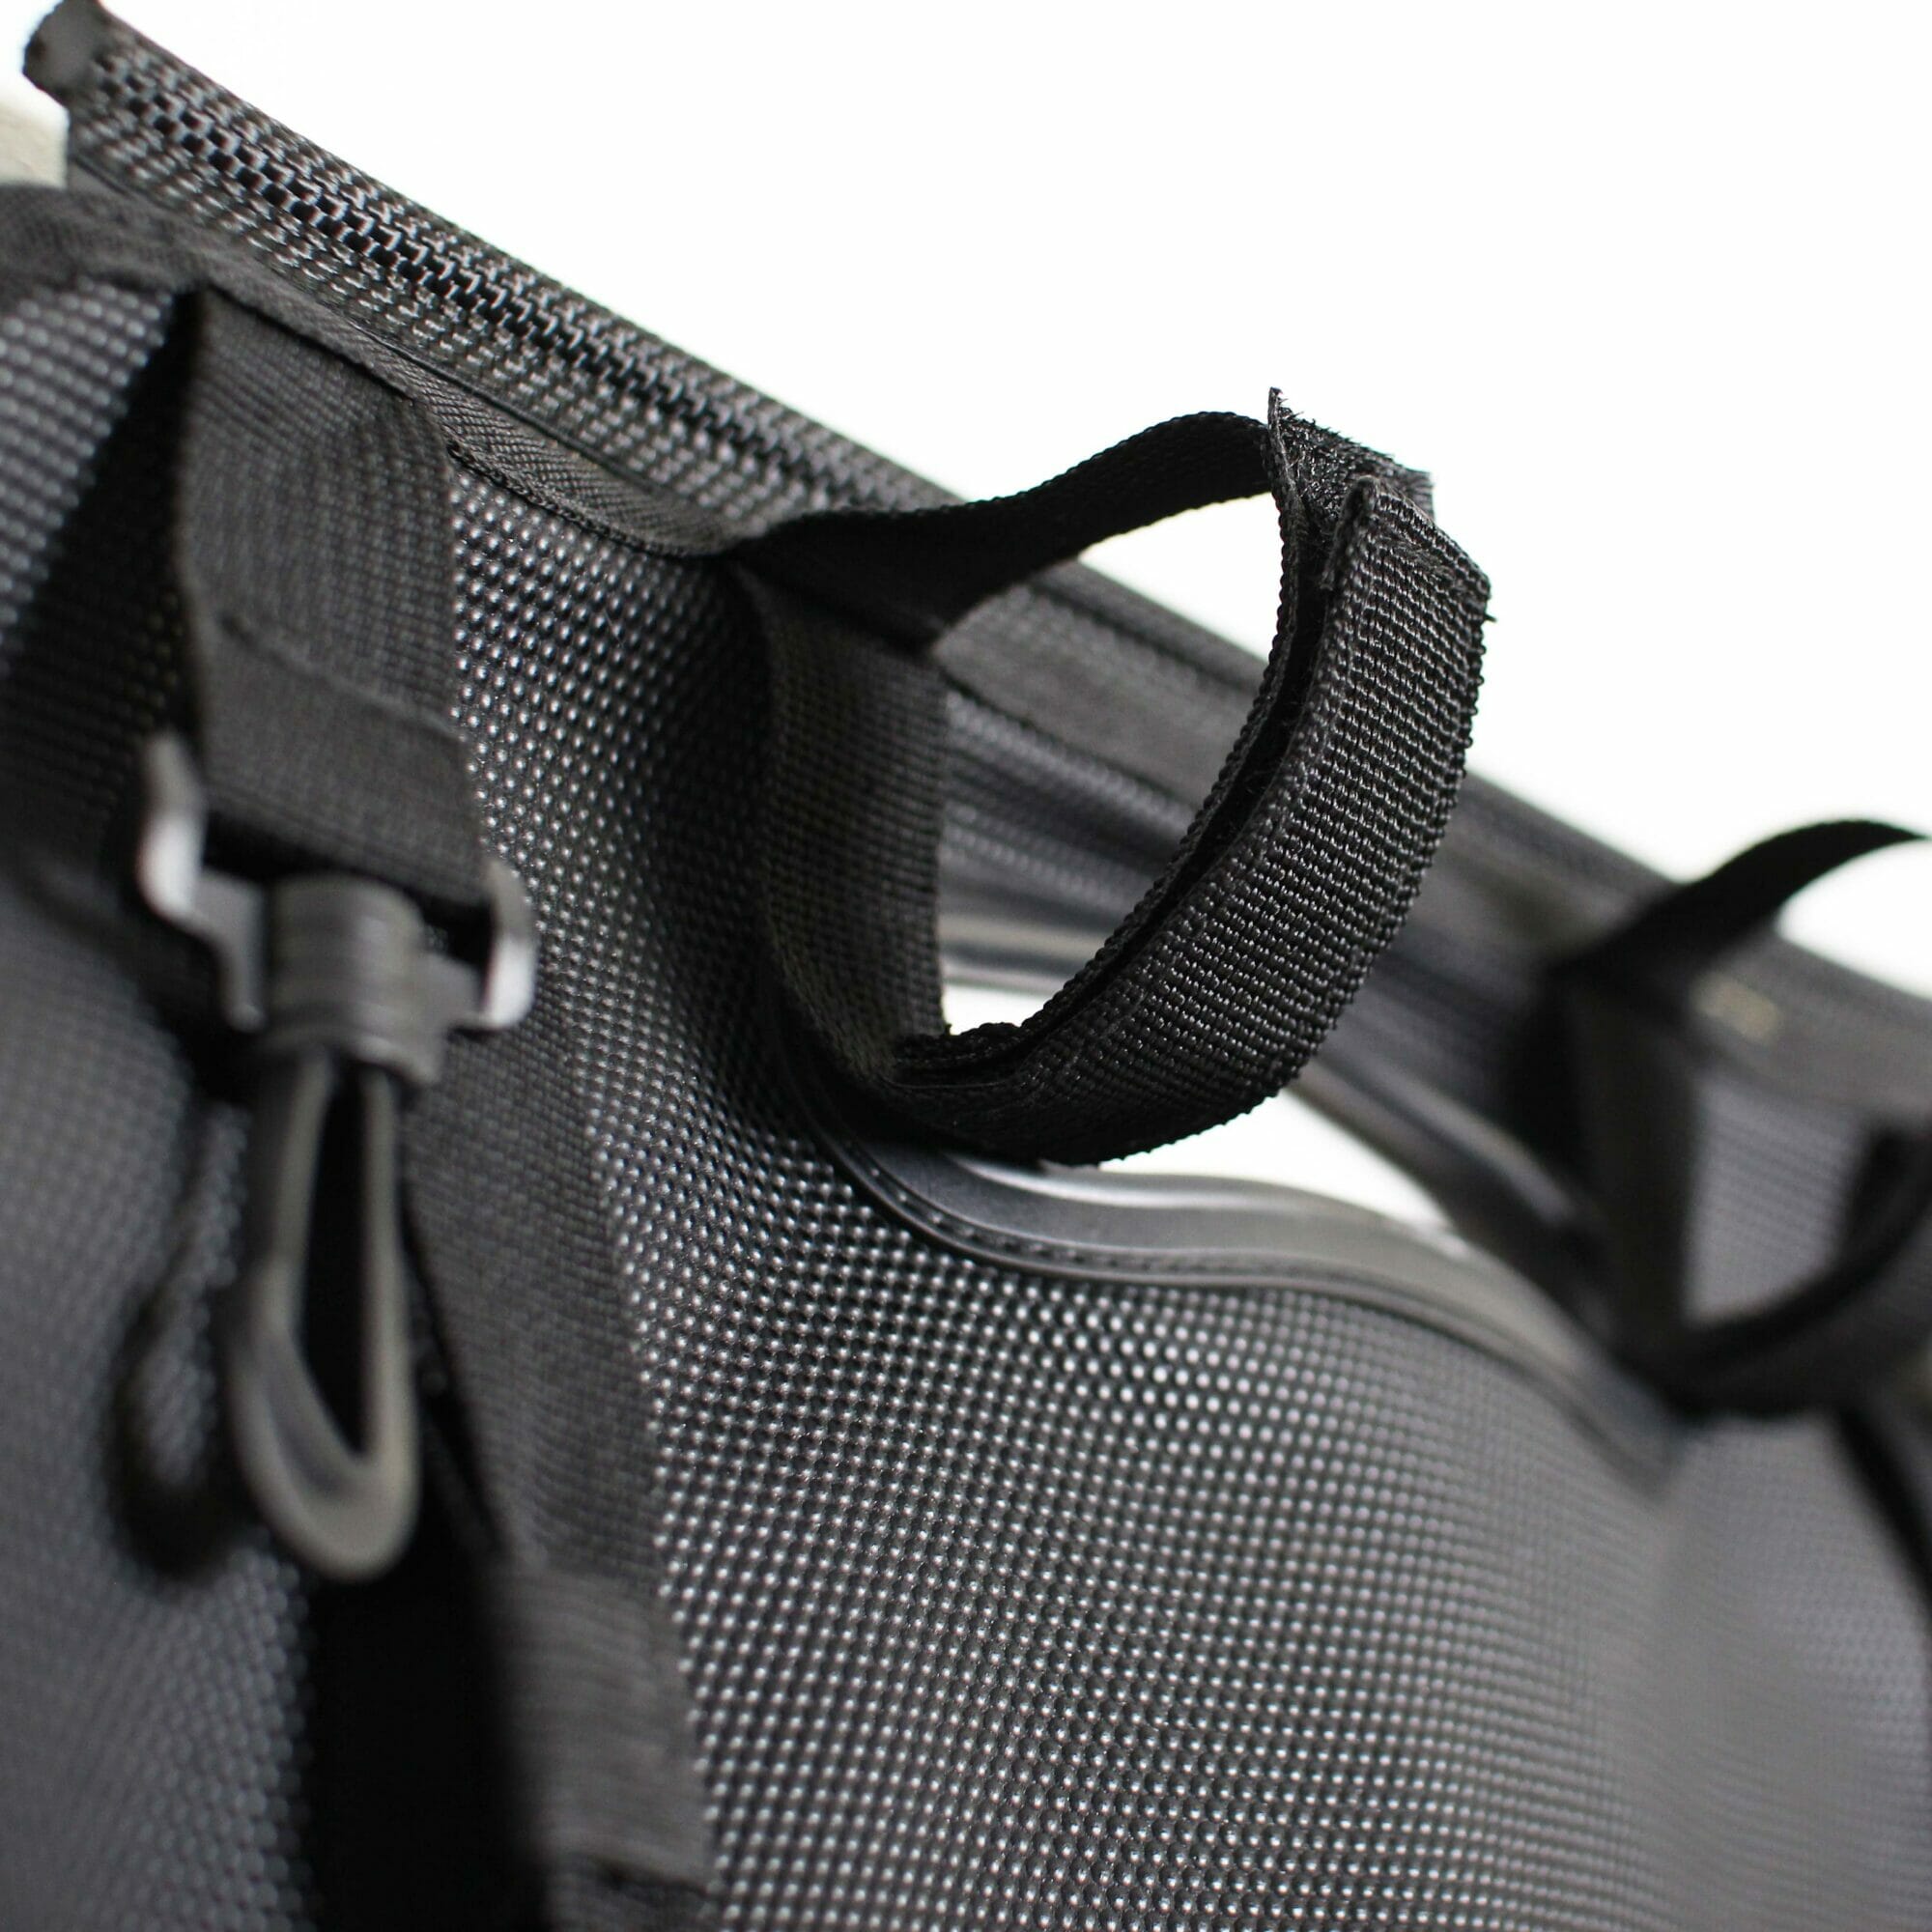 CAMPWERK Tasche schwarz - der perfekte Organizer für innen und aussen